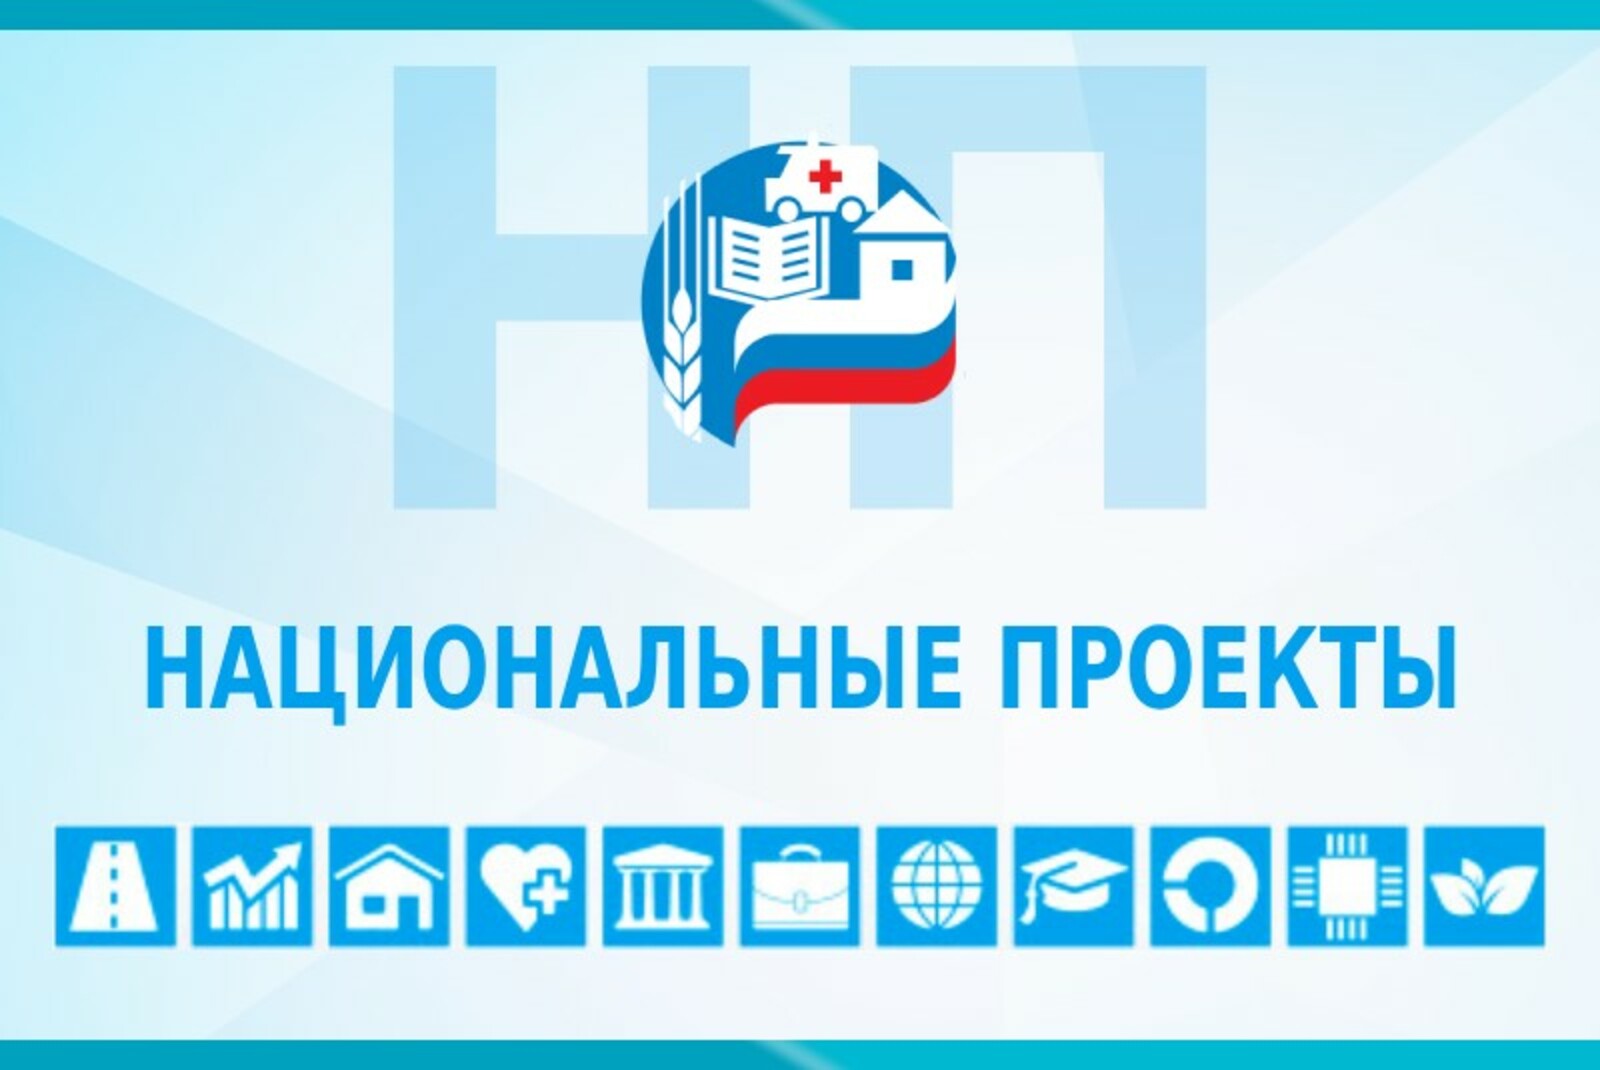 Ратмир Мавлиев поручил держать реализацию нацпроектов в Уфе «на особом контроле»